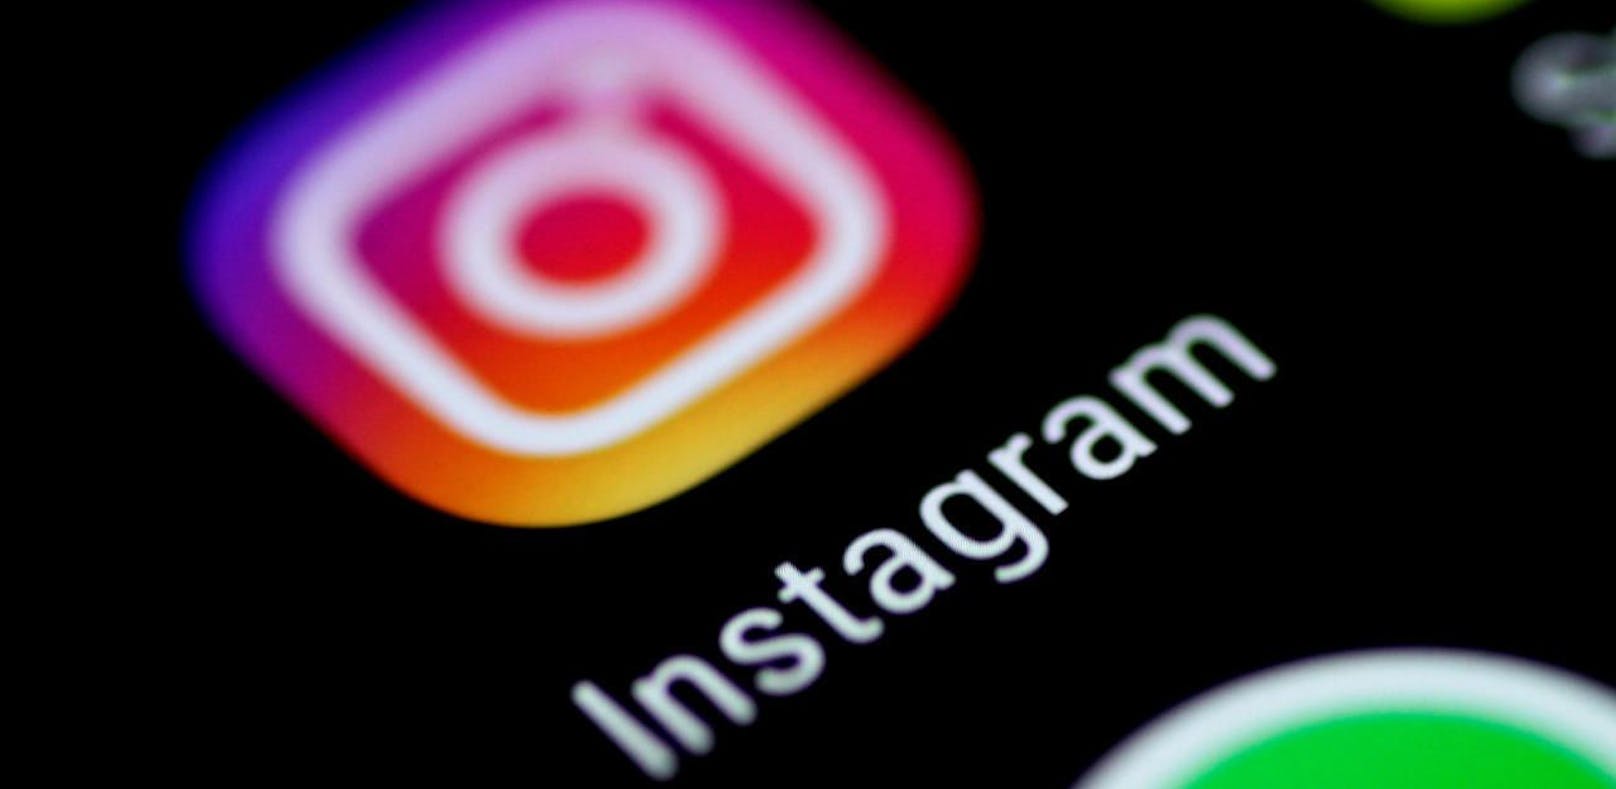 Update bringt zahlreiche neue Funktionen für Instagram.